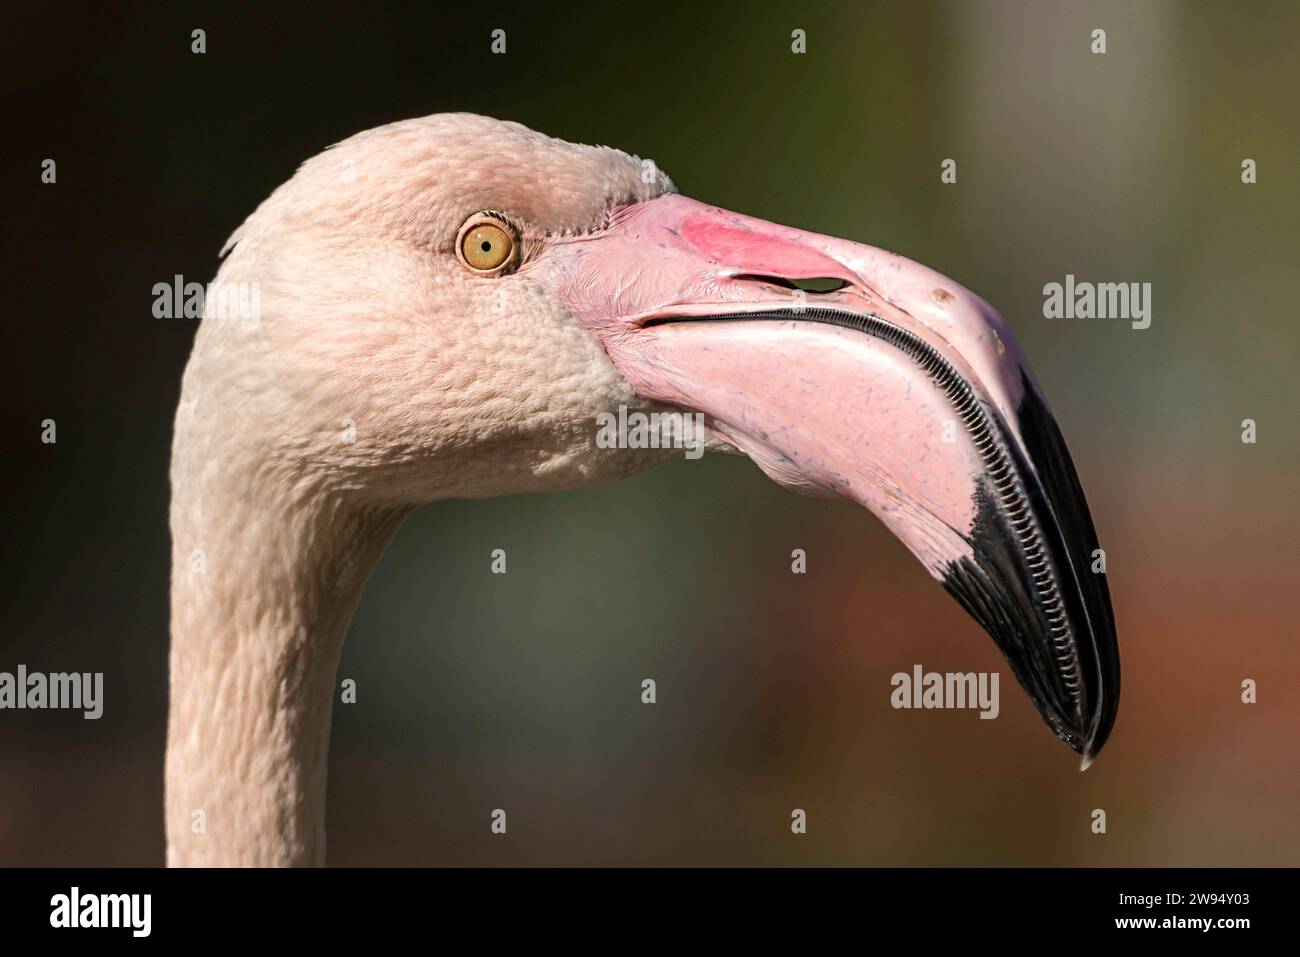 Ein fesselndes Porträt, das die Eleganz eines rosafarbenen Flamingos im Profil zeigt und die Details von Kopf und Hals in Nahaufnahme einfängt. Stockfoto